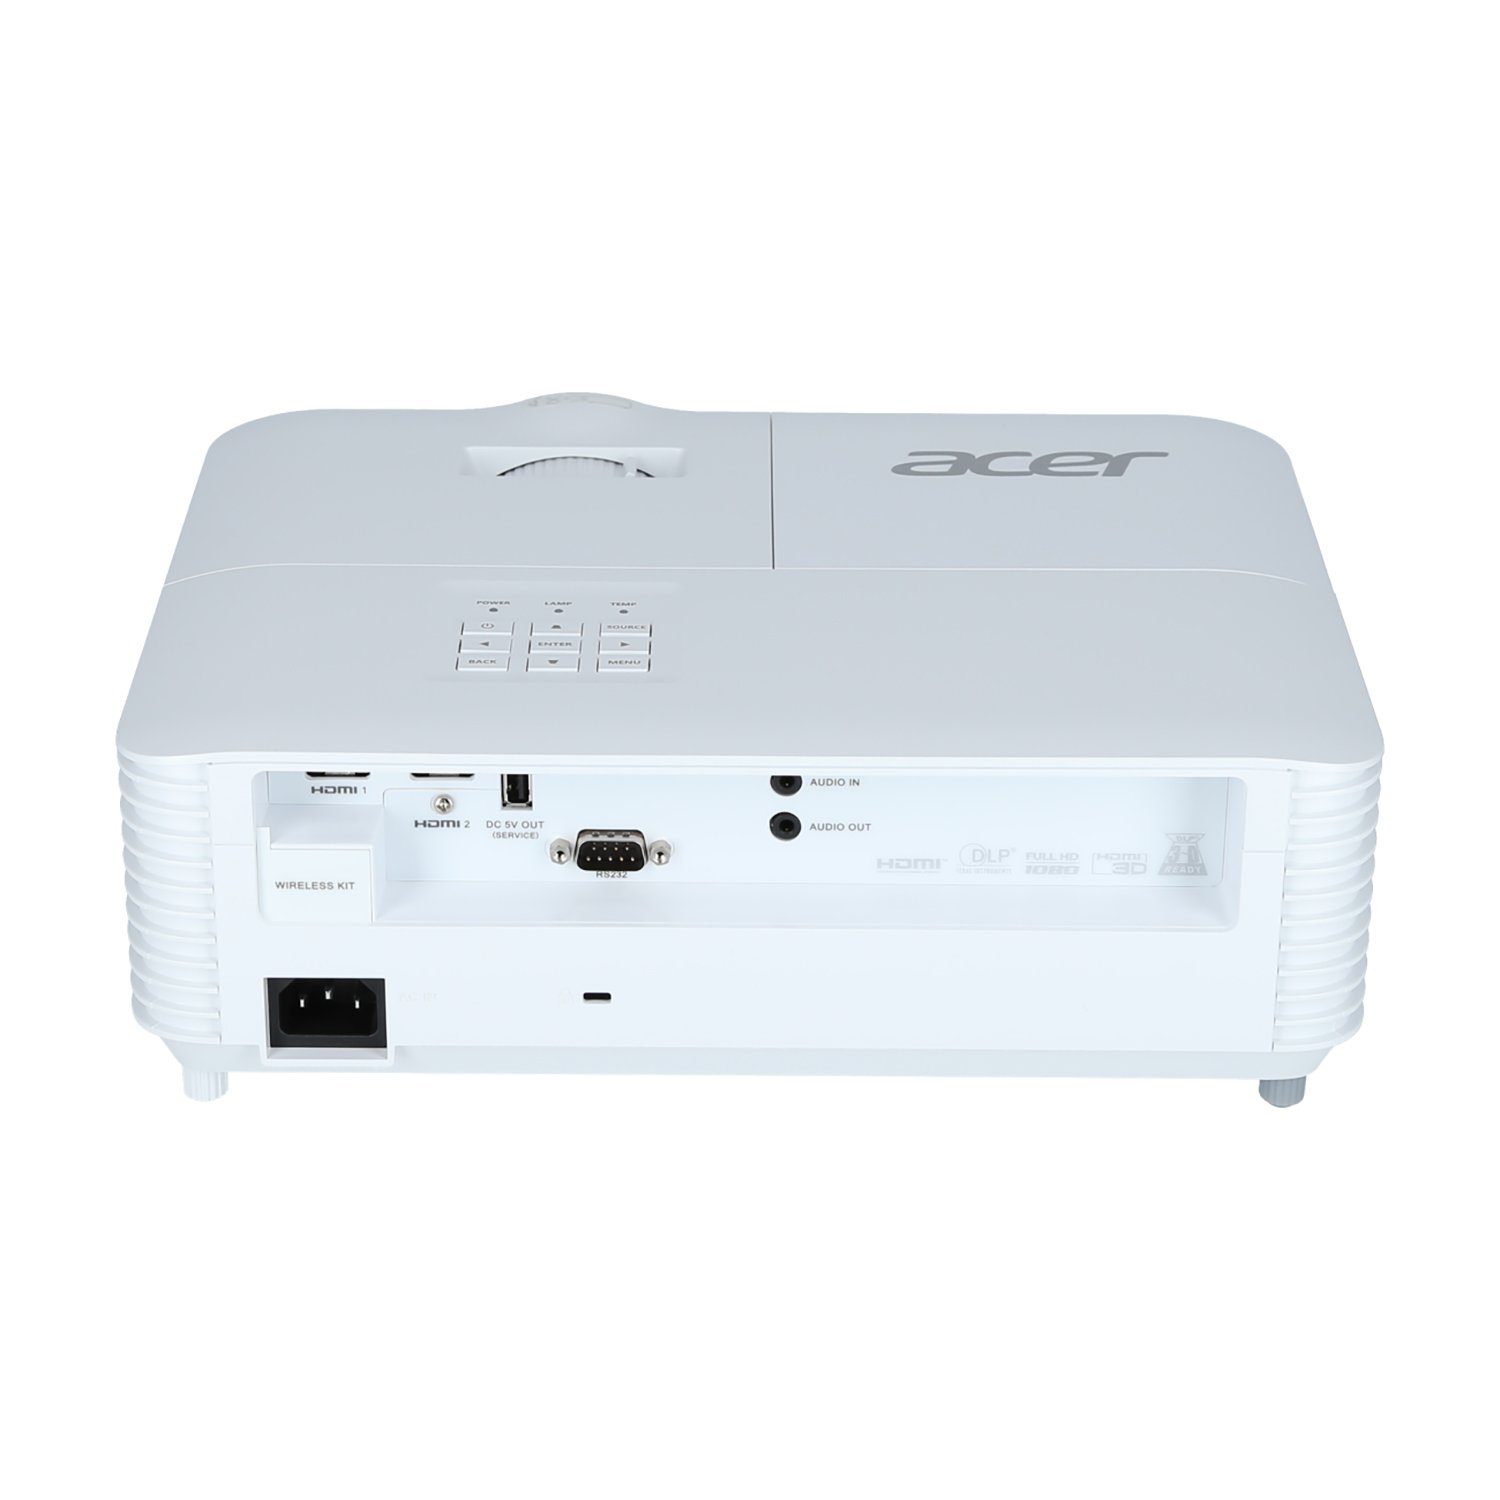 Beamer lm, 10000:1, H6546Ki 1080 (4160 1920 px) Acer x